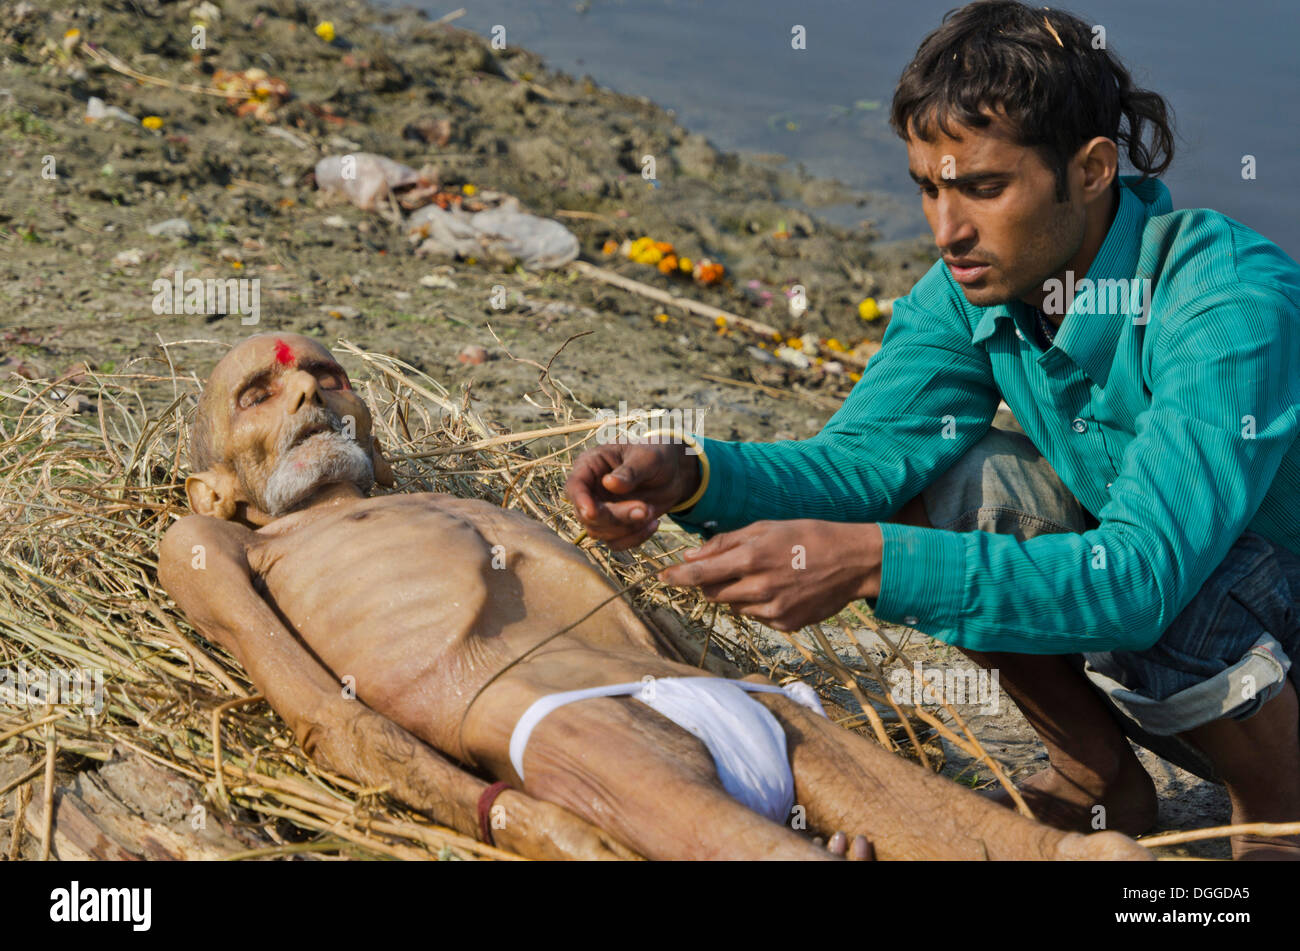 Mettre un corps mort sur le bois de chauffe sur les bords de la rivière Yamuna dans le cadre d'une cérémonie de crémation, Vrindavan, Inde, Asie Banque D'Images